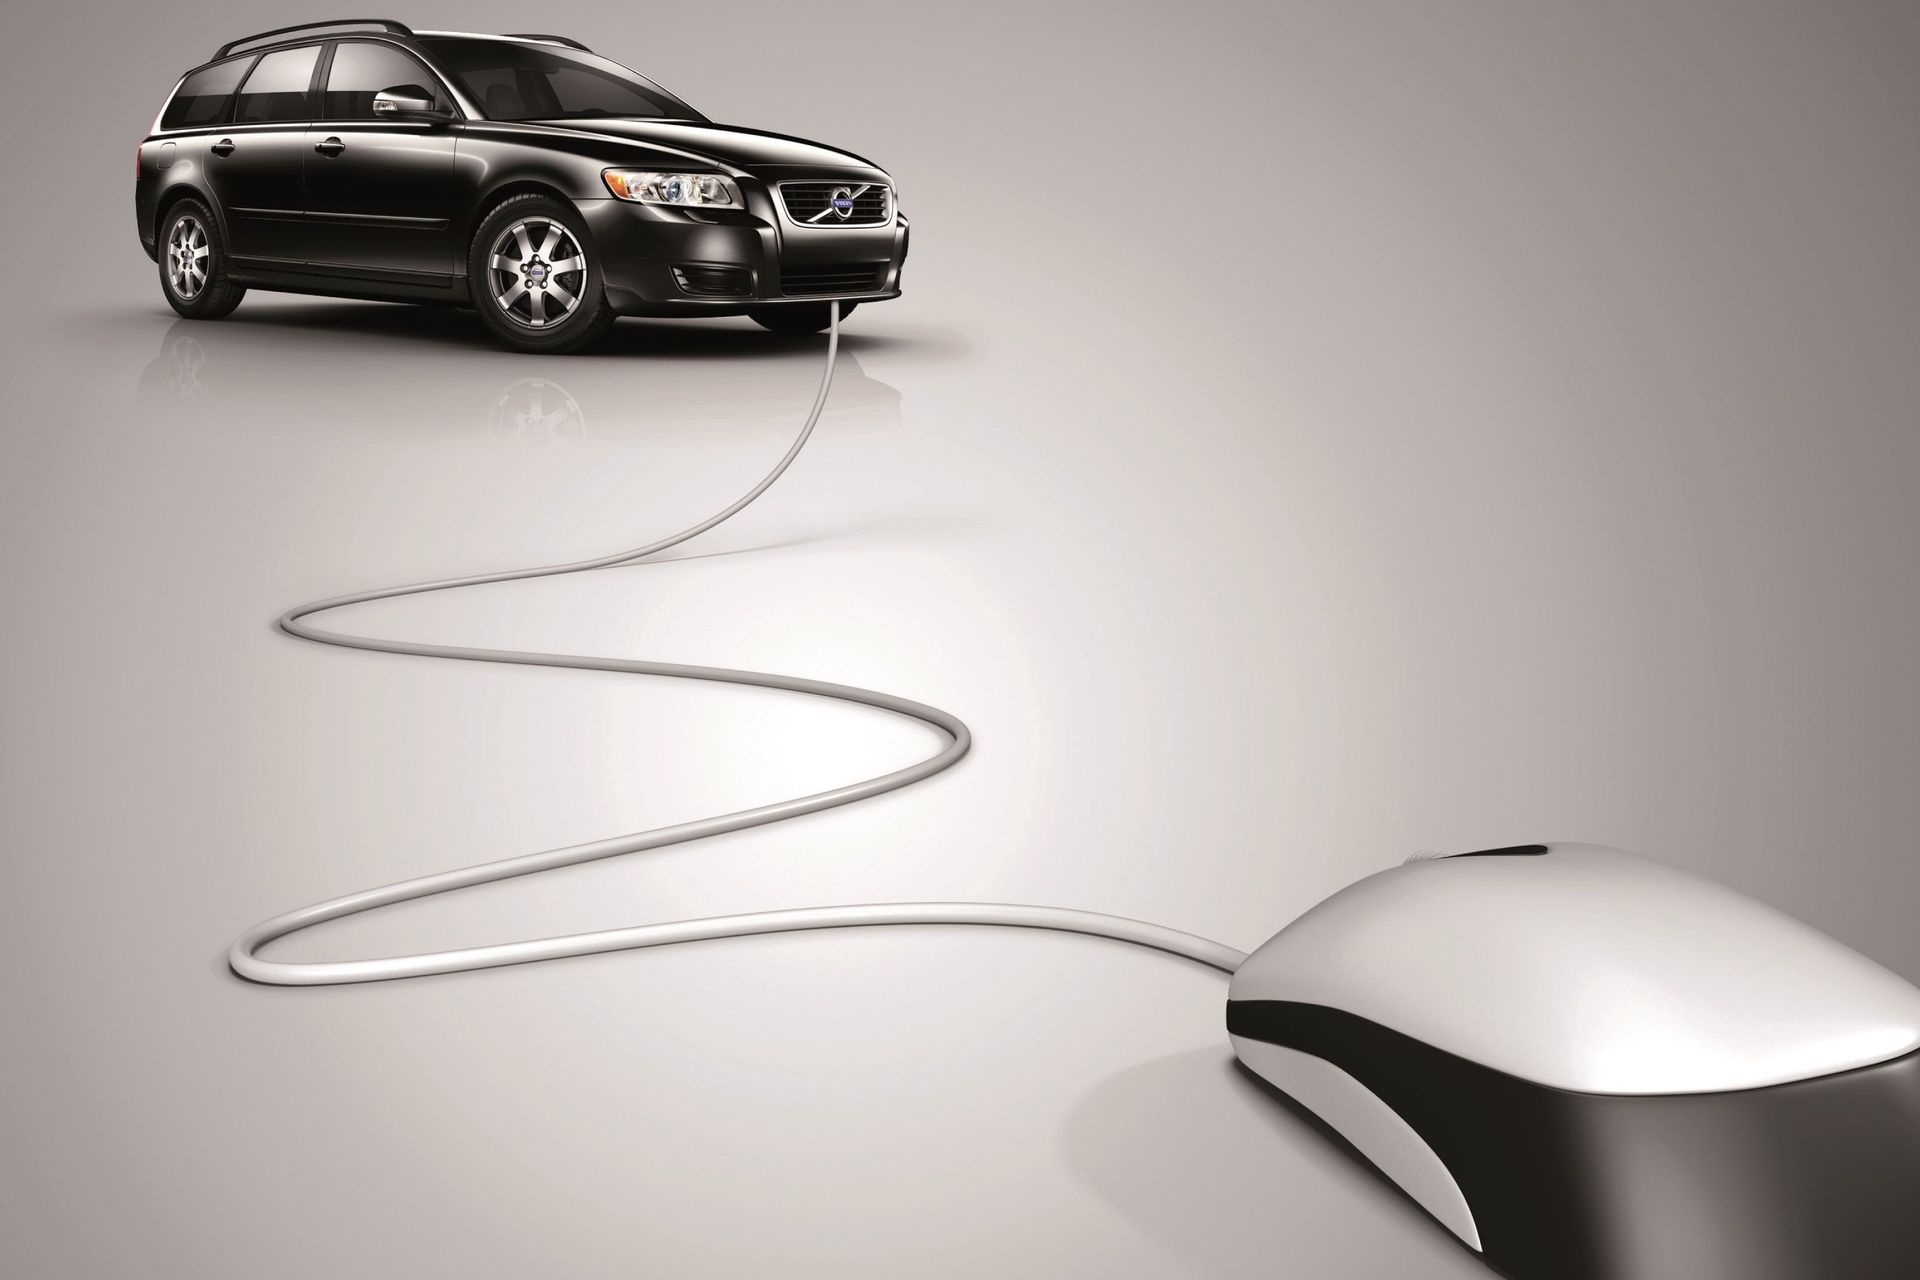 Volvo Cars propose une mise à jour gratuite du logiciel de la voiture et certains prix tout compris